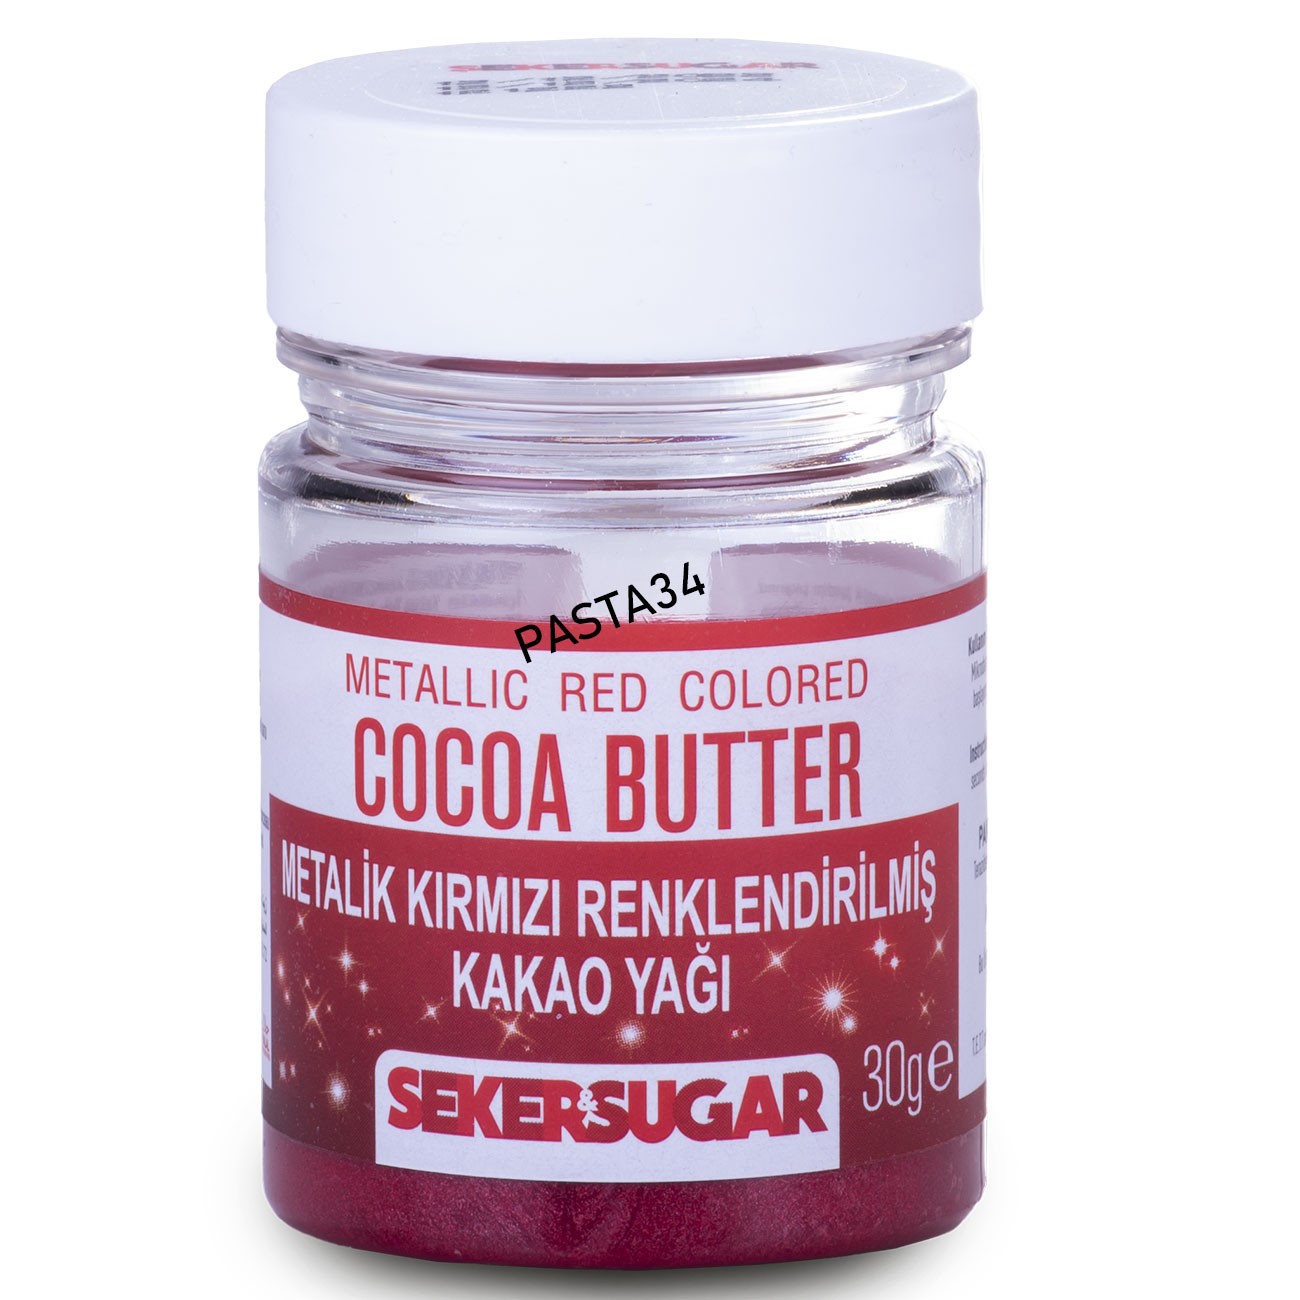 Şeker & Sugar Renklendirilmiş Kakao Yağı 30 Gr - Metalik Kırmızı